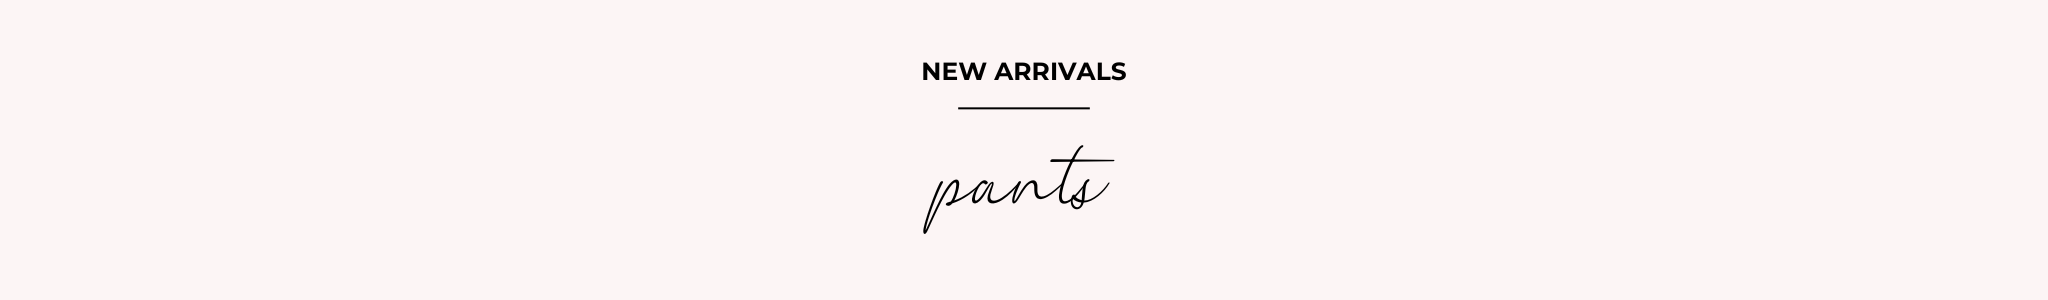 NEW ARRIVALS - PANTS